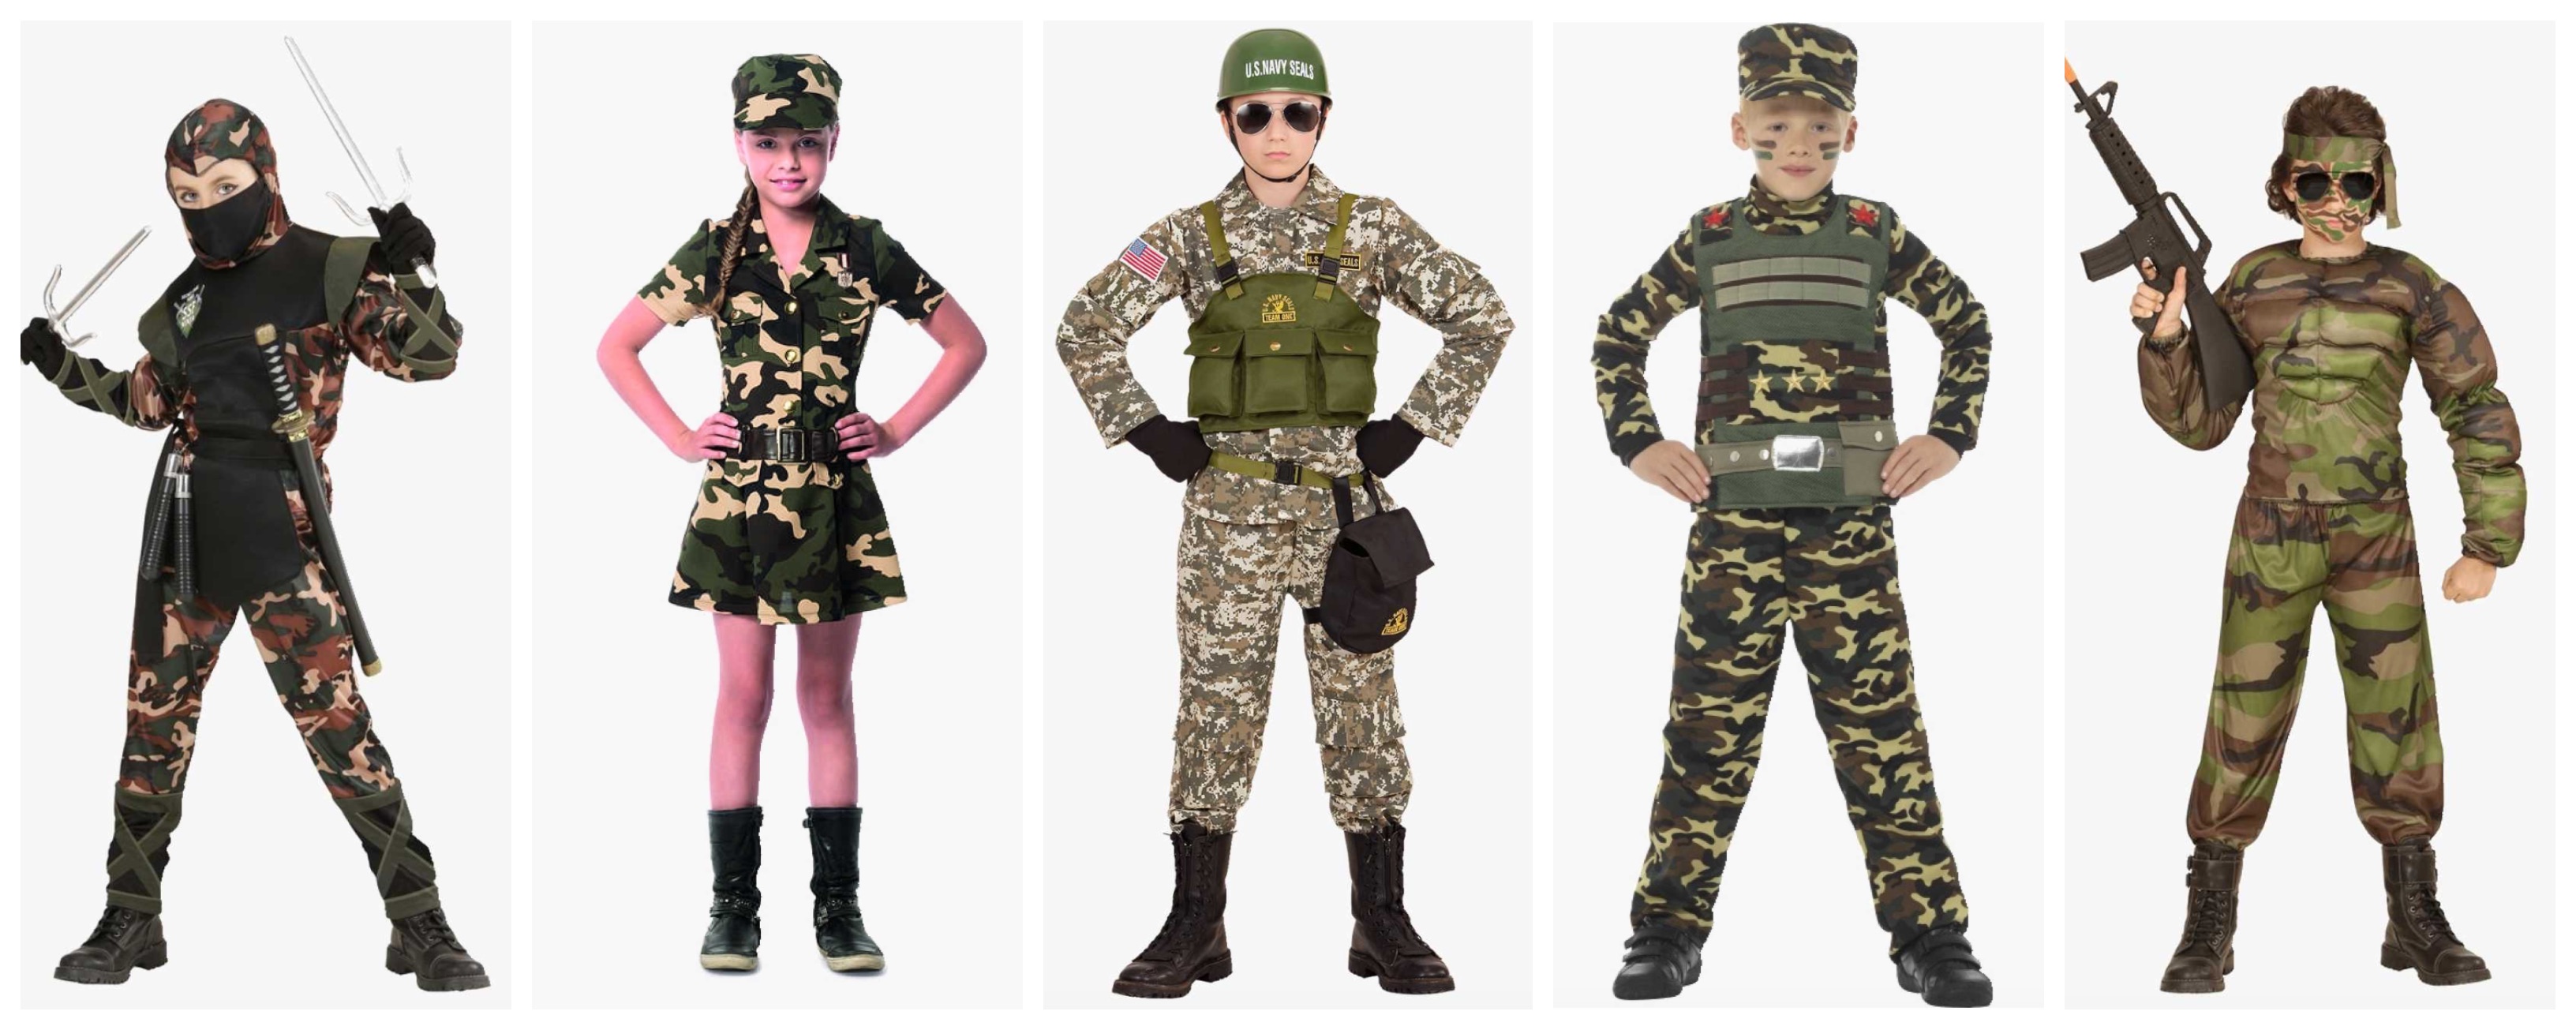 soldat kostume til børn 1 - Soldat kostume til børn